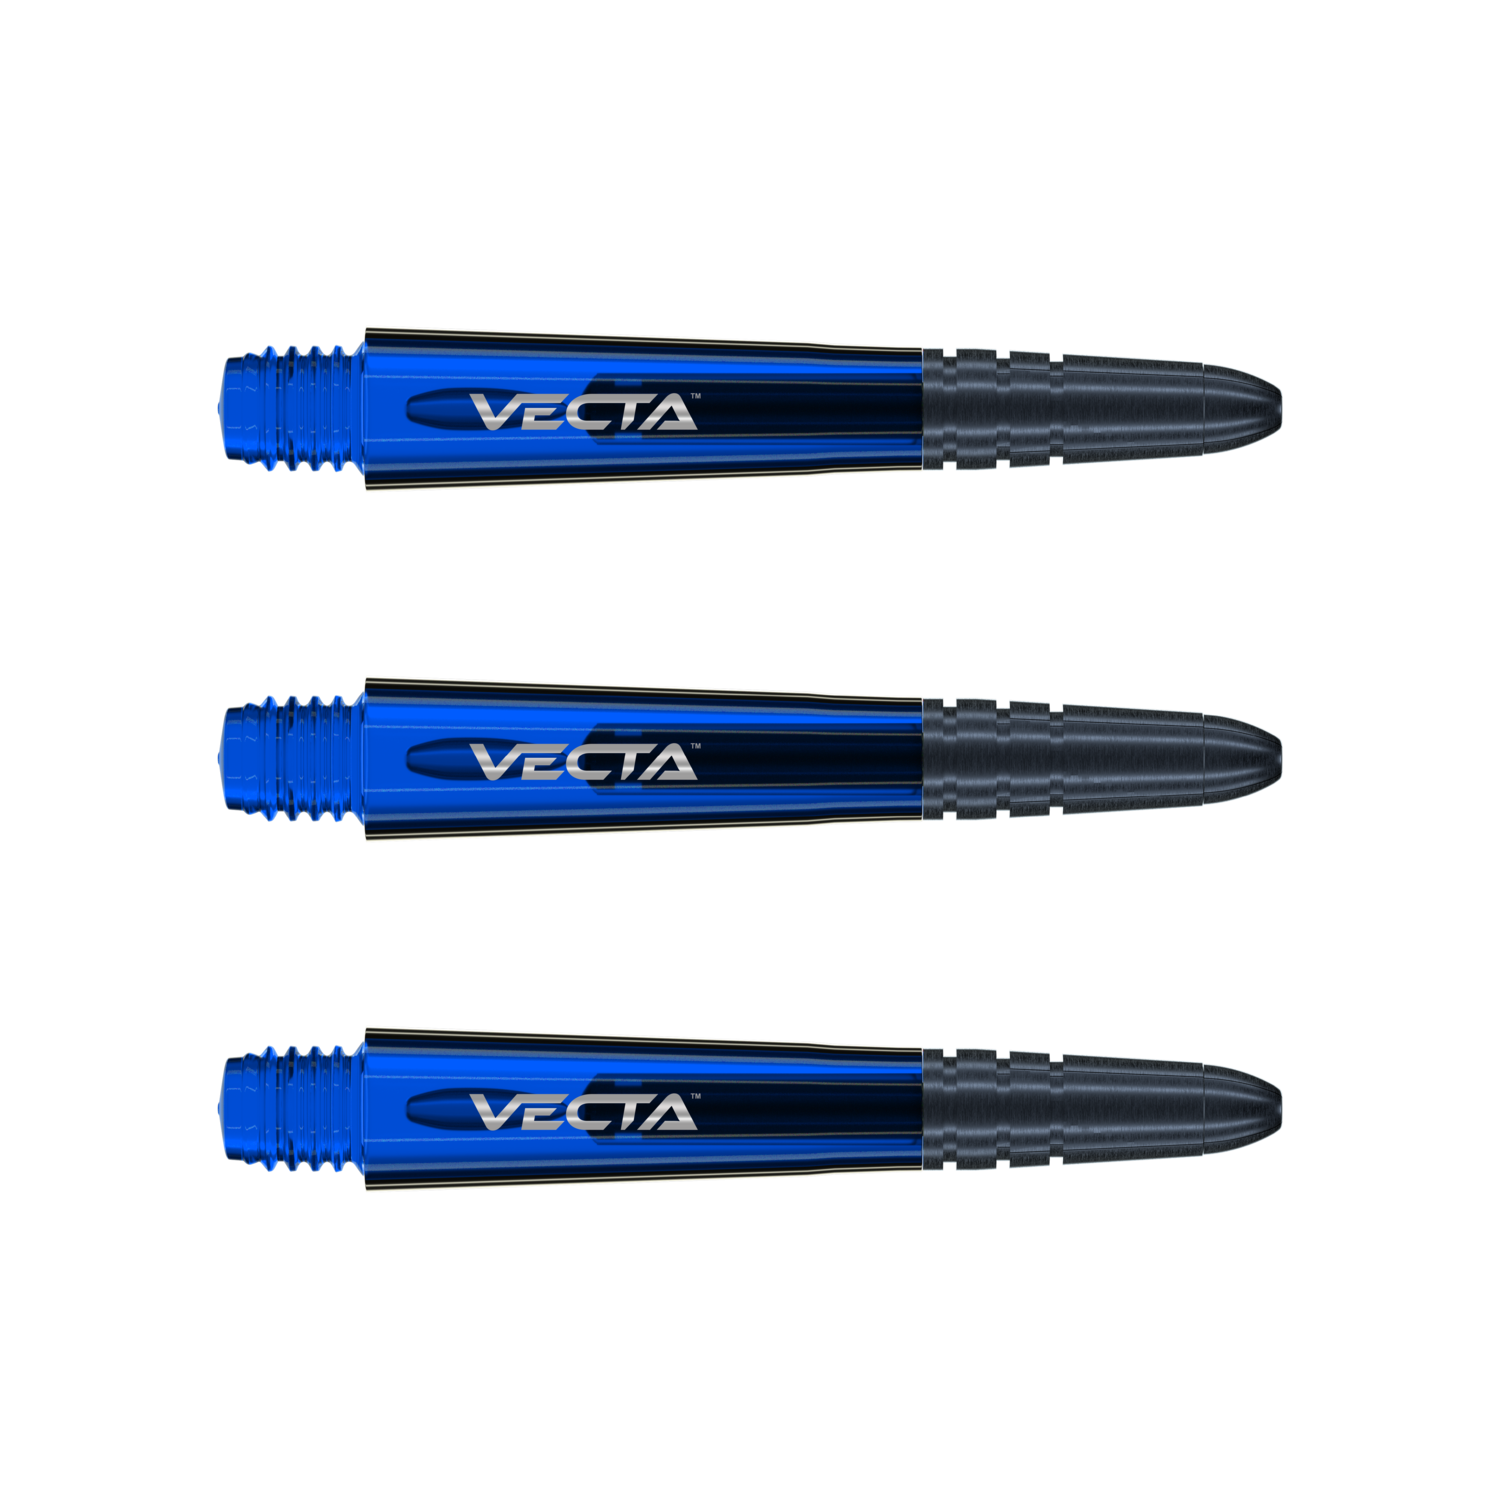 Vecta in between blue shafts